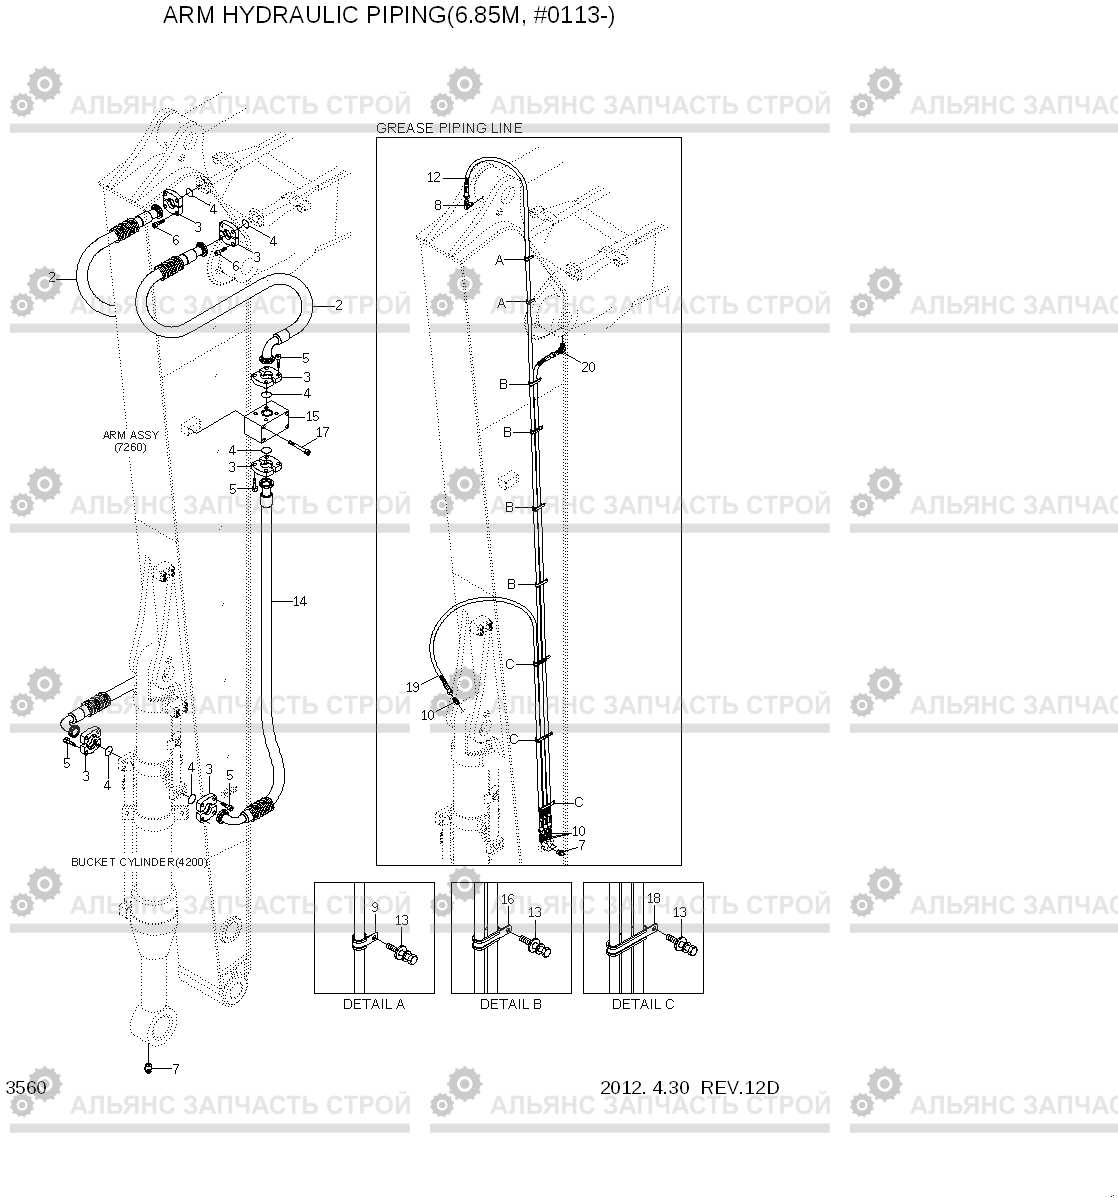 3560 ARM HYDRAULIC PIPING(6.85M, #0113-) R500LC-7, Hyundai